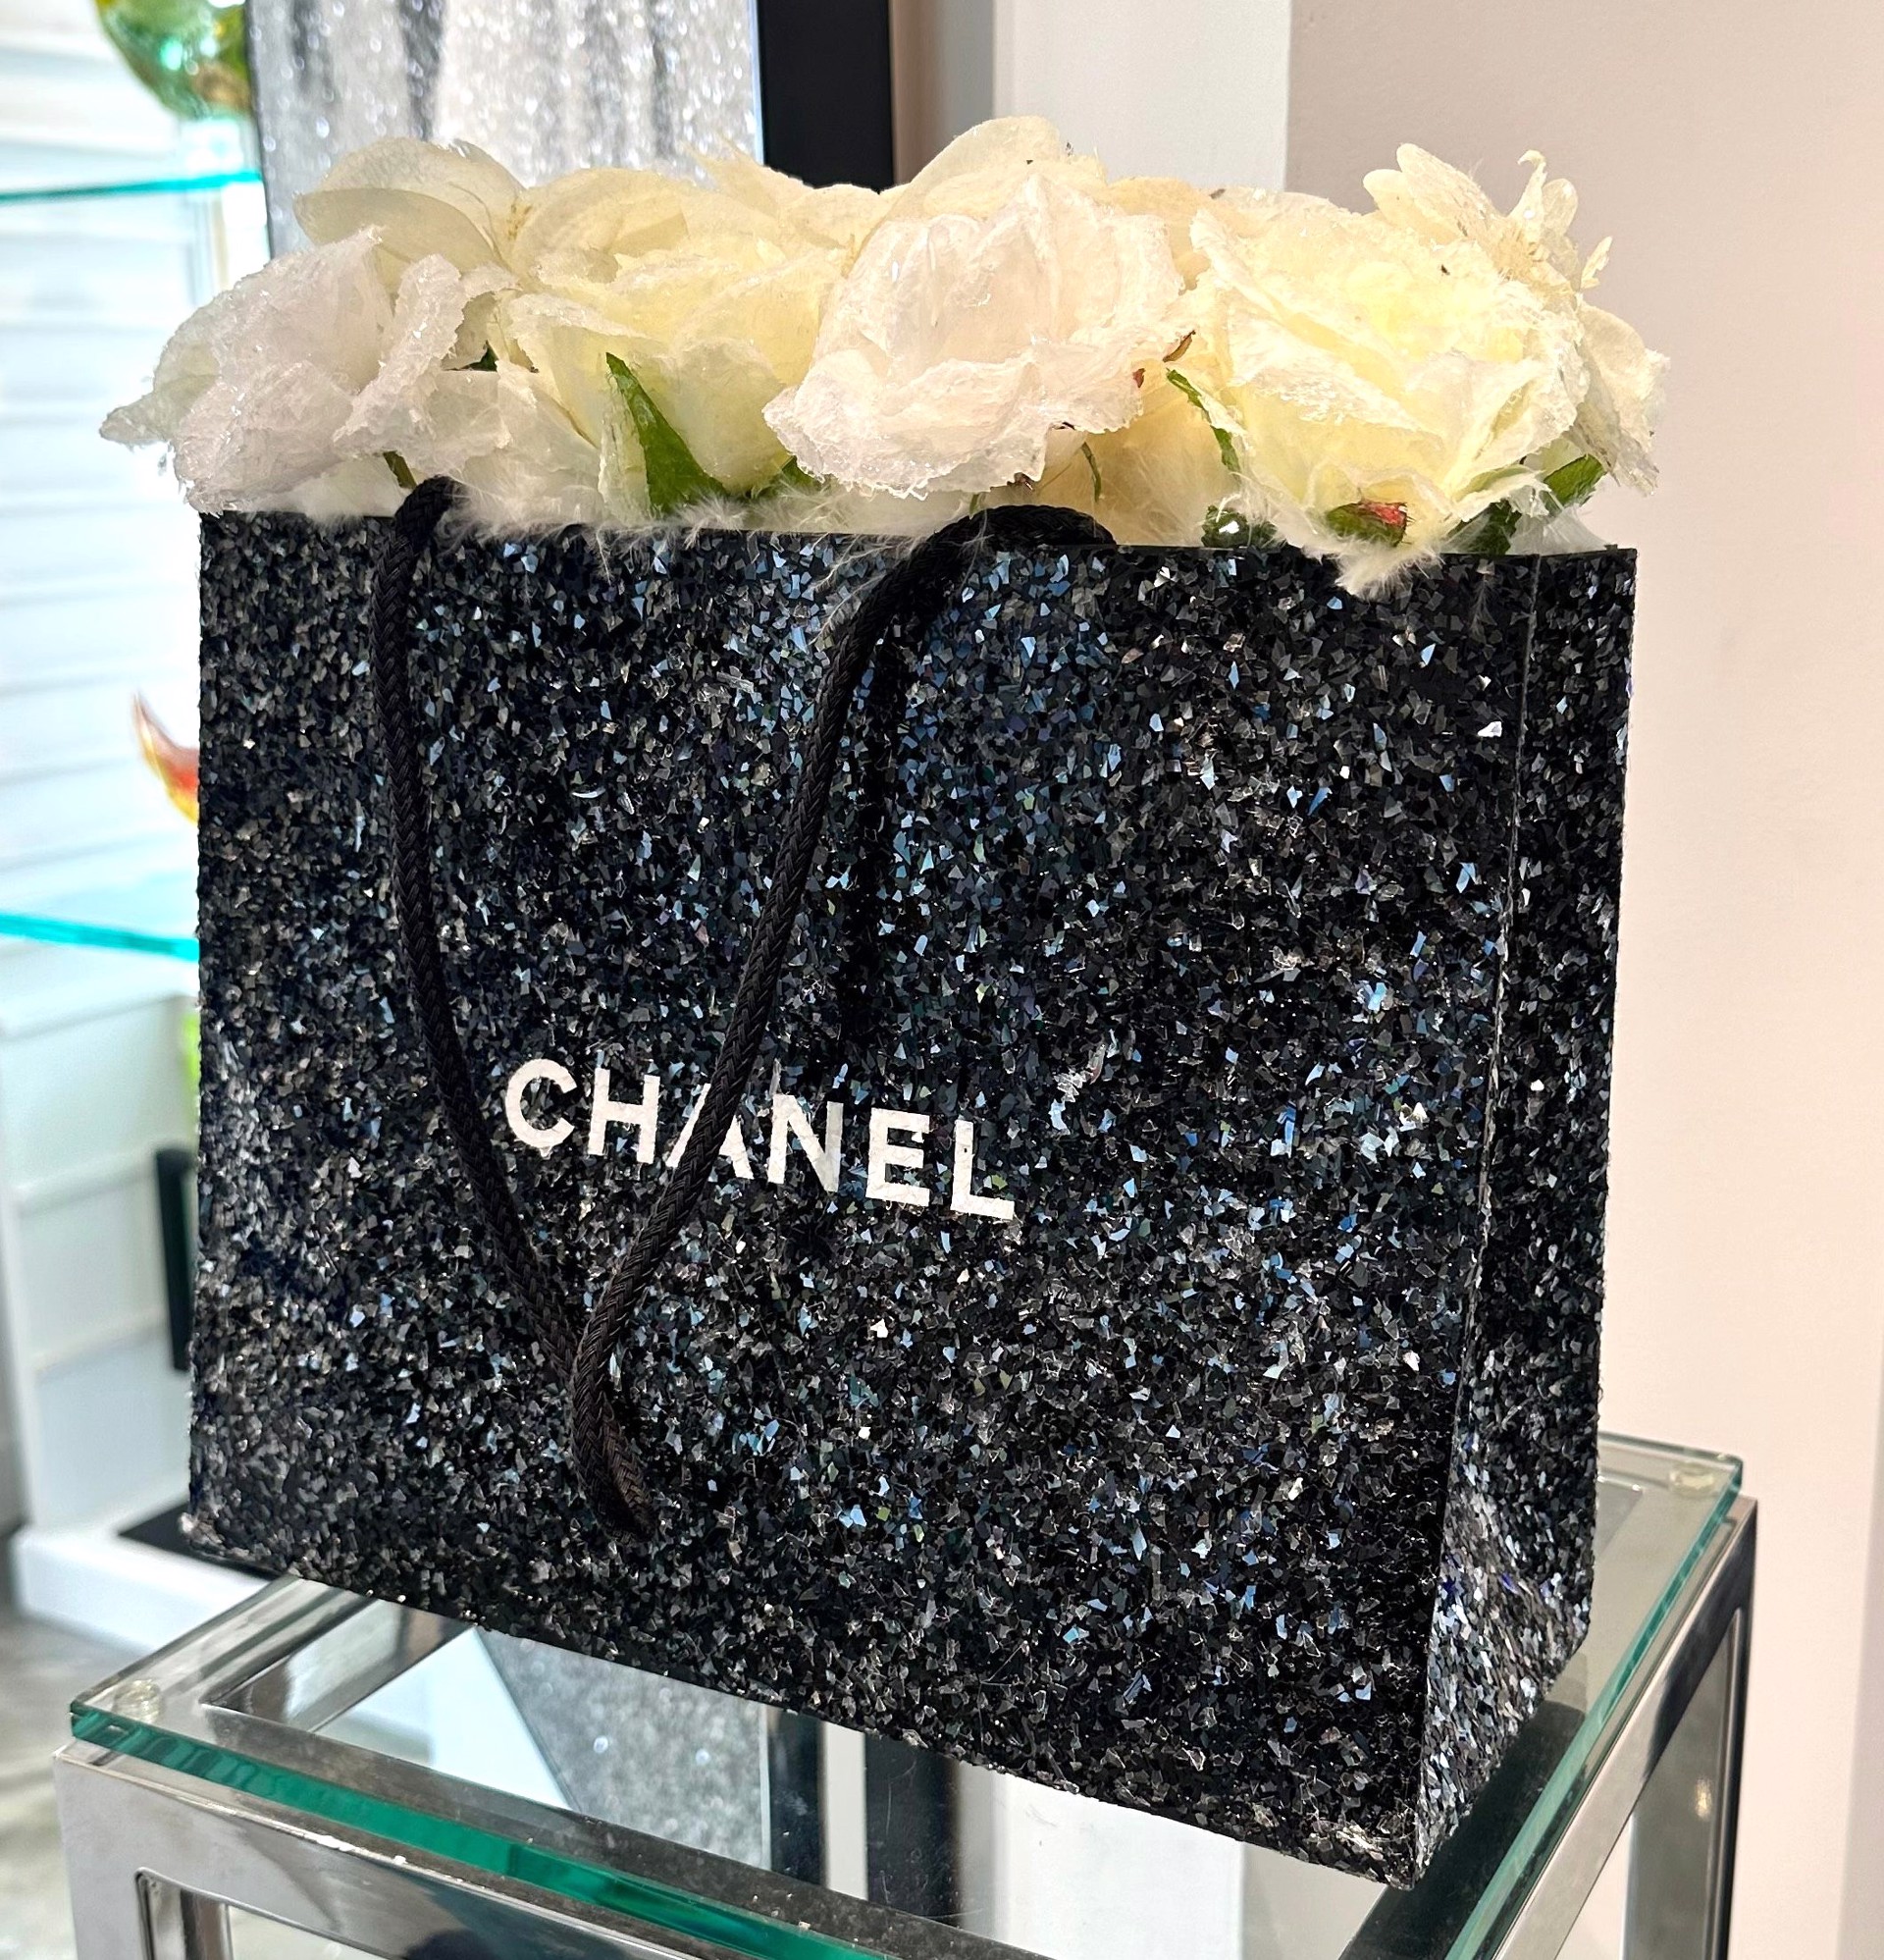 Chanel Bag by Kfir Moyal